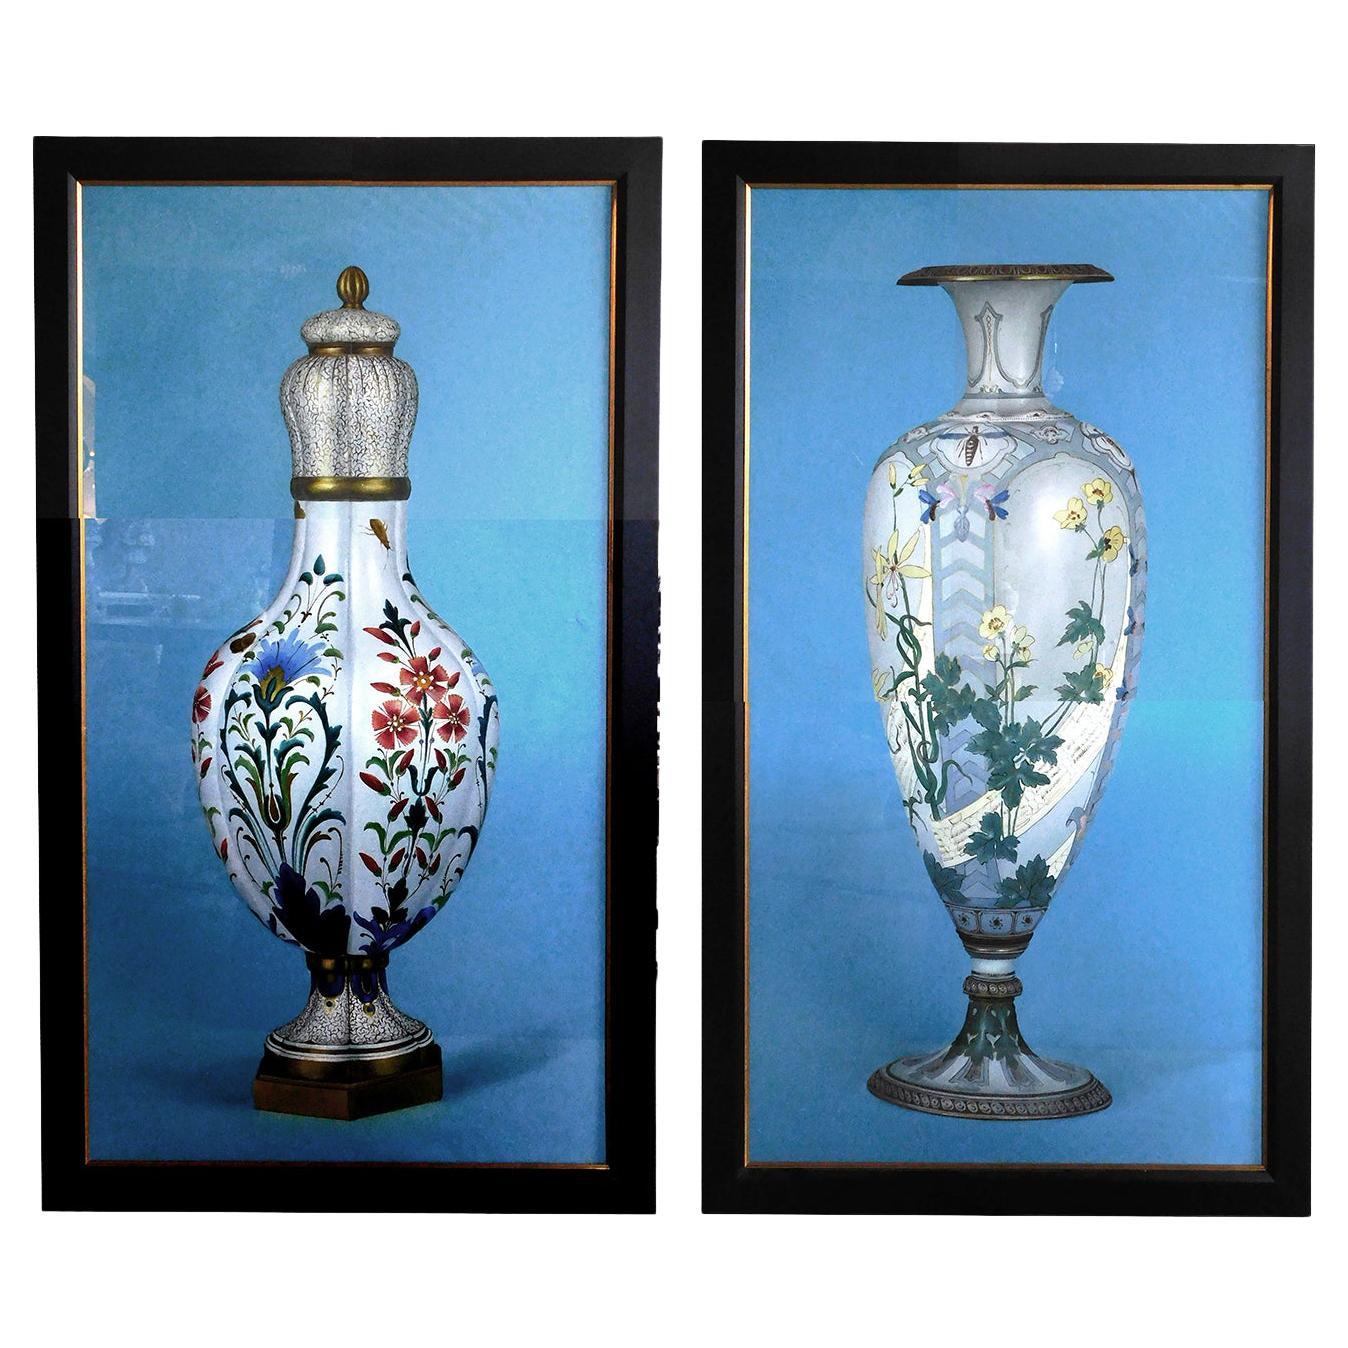 Peinture à l'huile sur toile ; grande paire de peintures représentant des vases chinois